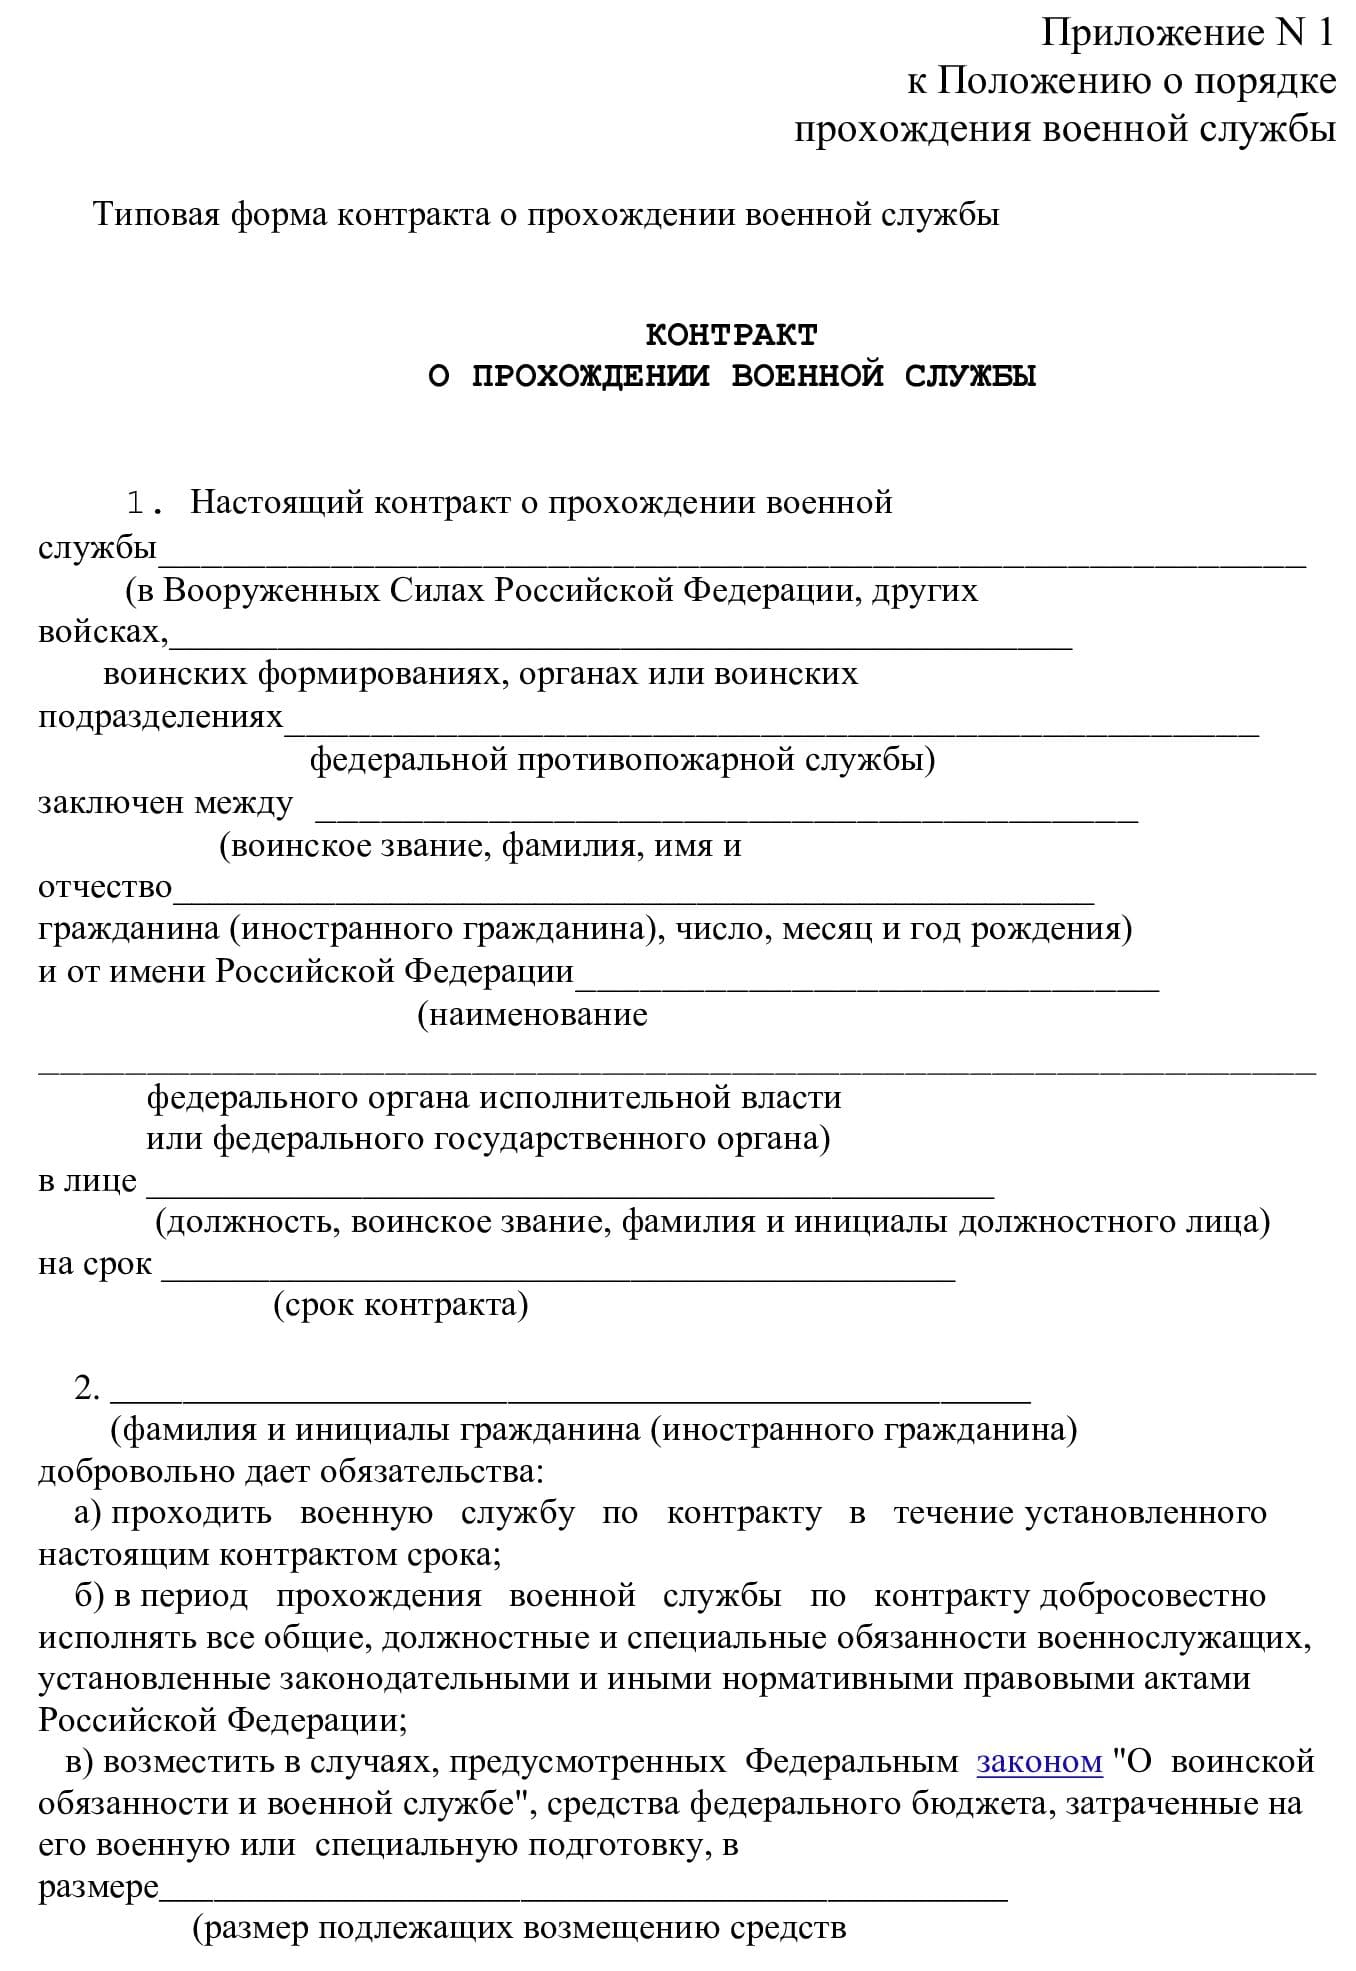 Типовая форма контракта с военнослужащим РФ